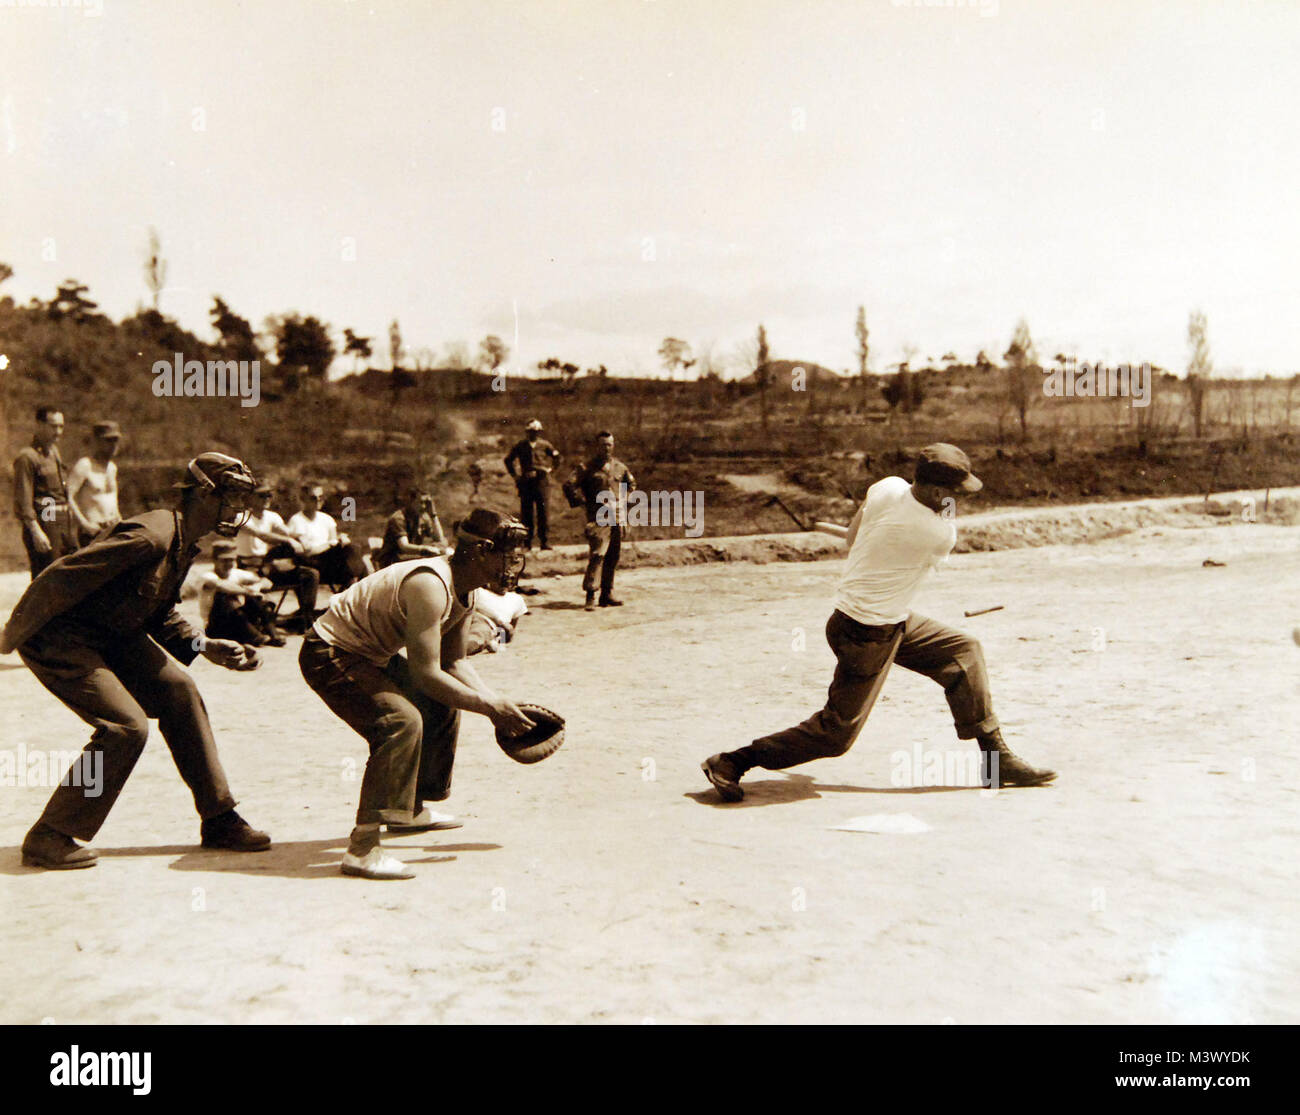 80-G-442245: Guerra de Corea, 1950-1953. Juego de baseball en el Campamento Base Munsan-Ni, Corea, 3 de mayo de 1952. Oficial de la Marina de EE.UU. Fotografía, ahora en las colecciones de los Archivos Nacionales. (2018/01/10). 80-G-442245 24749310787 o Foto de stock